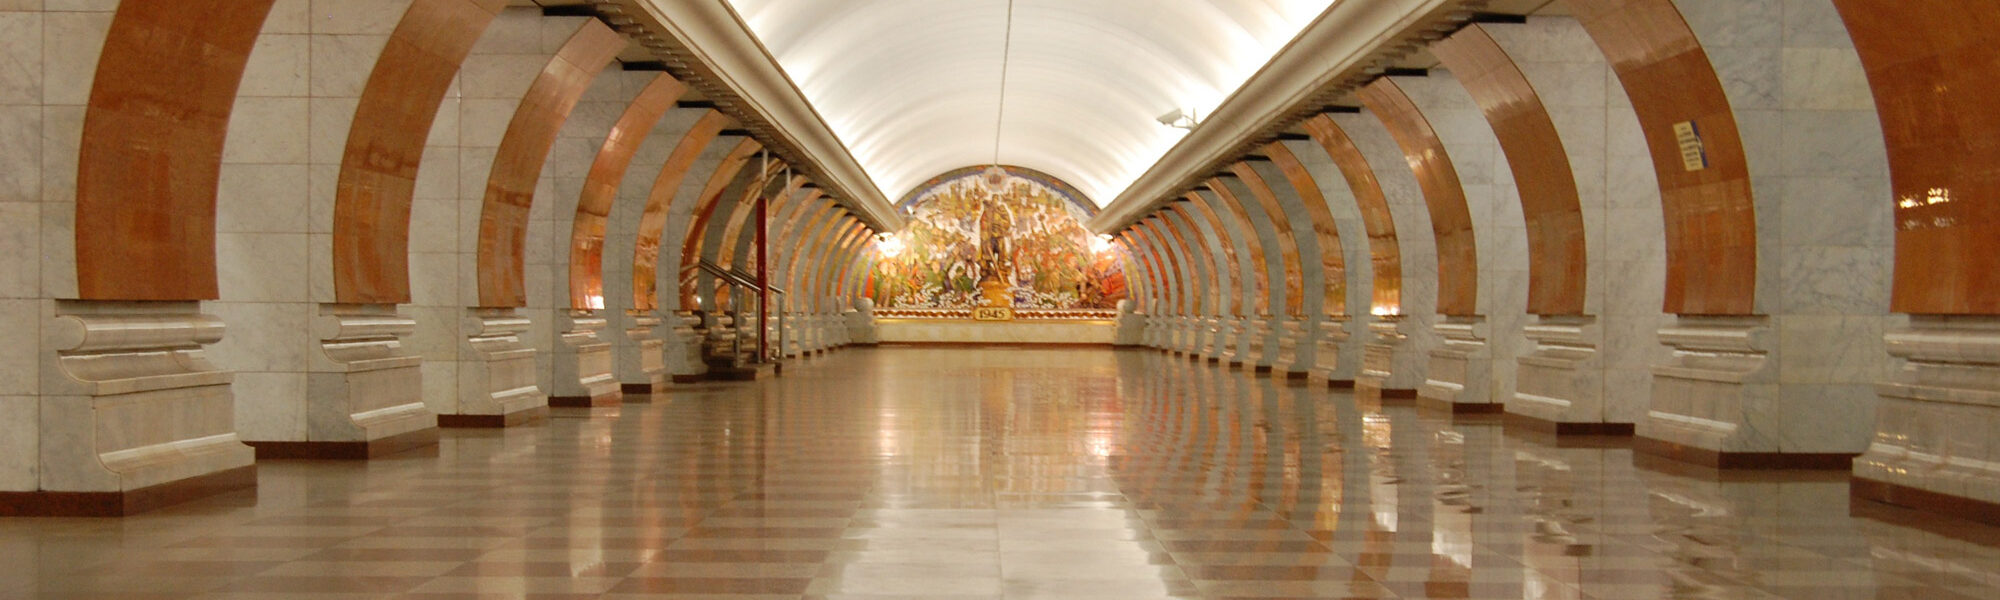 Op mijn wishlist: De metrostations van Moskou